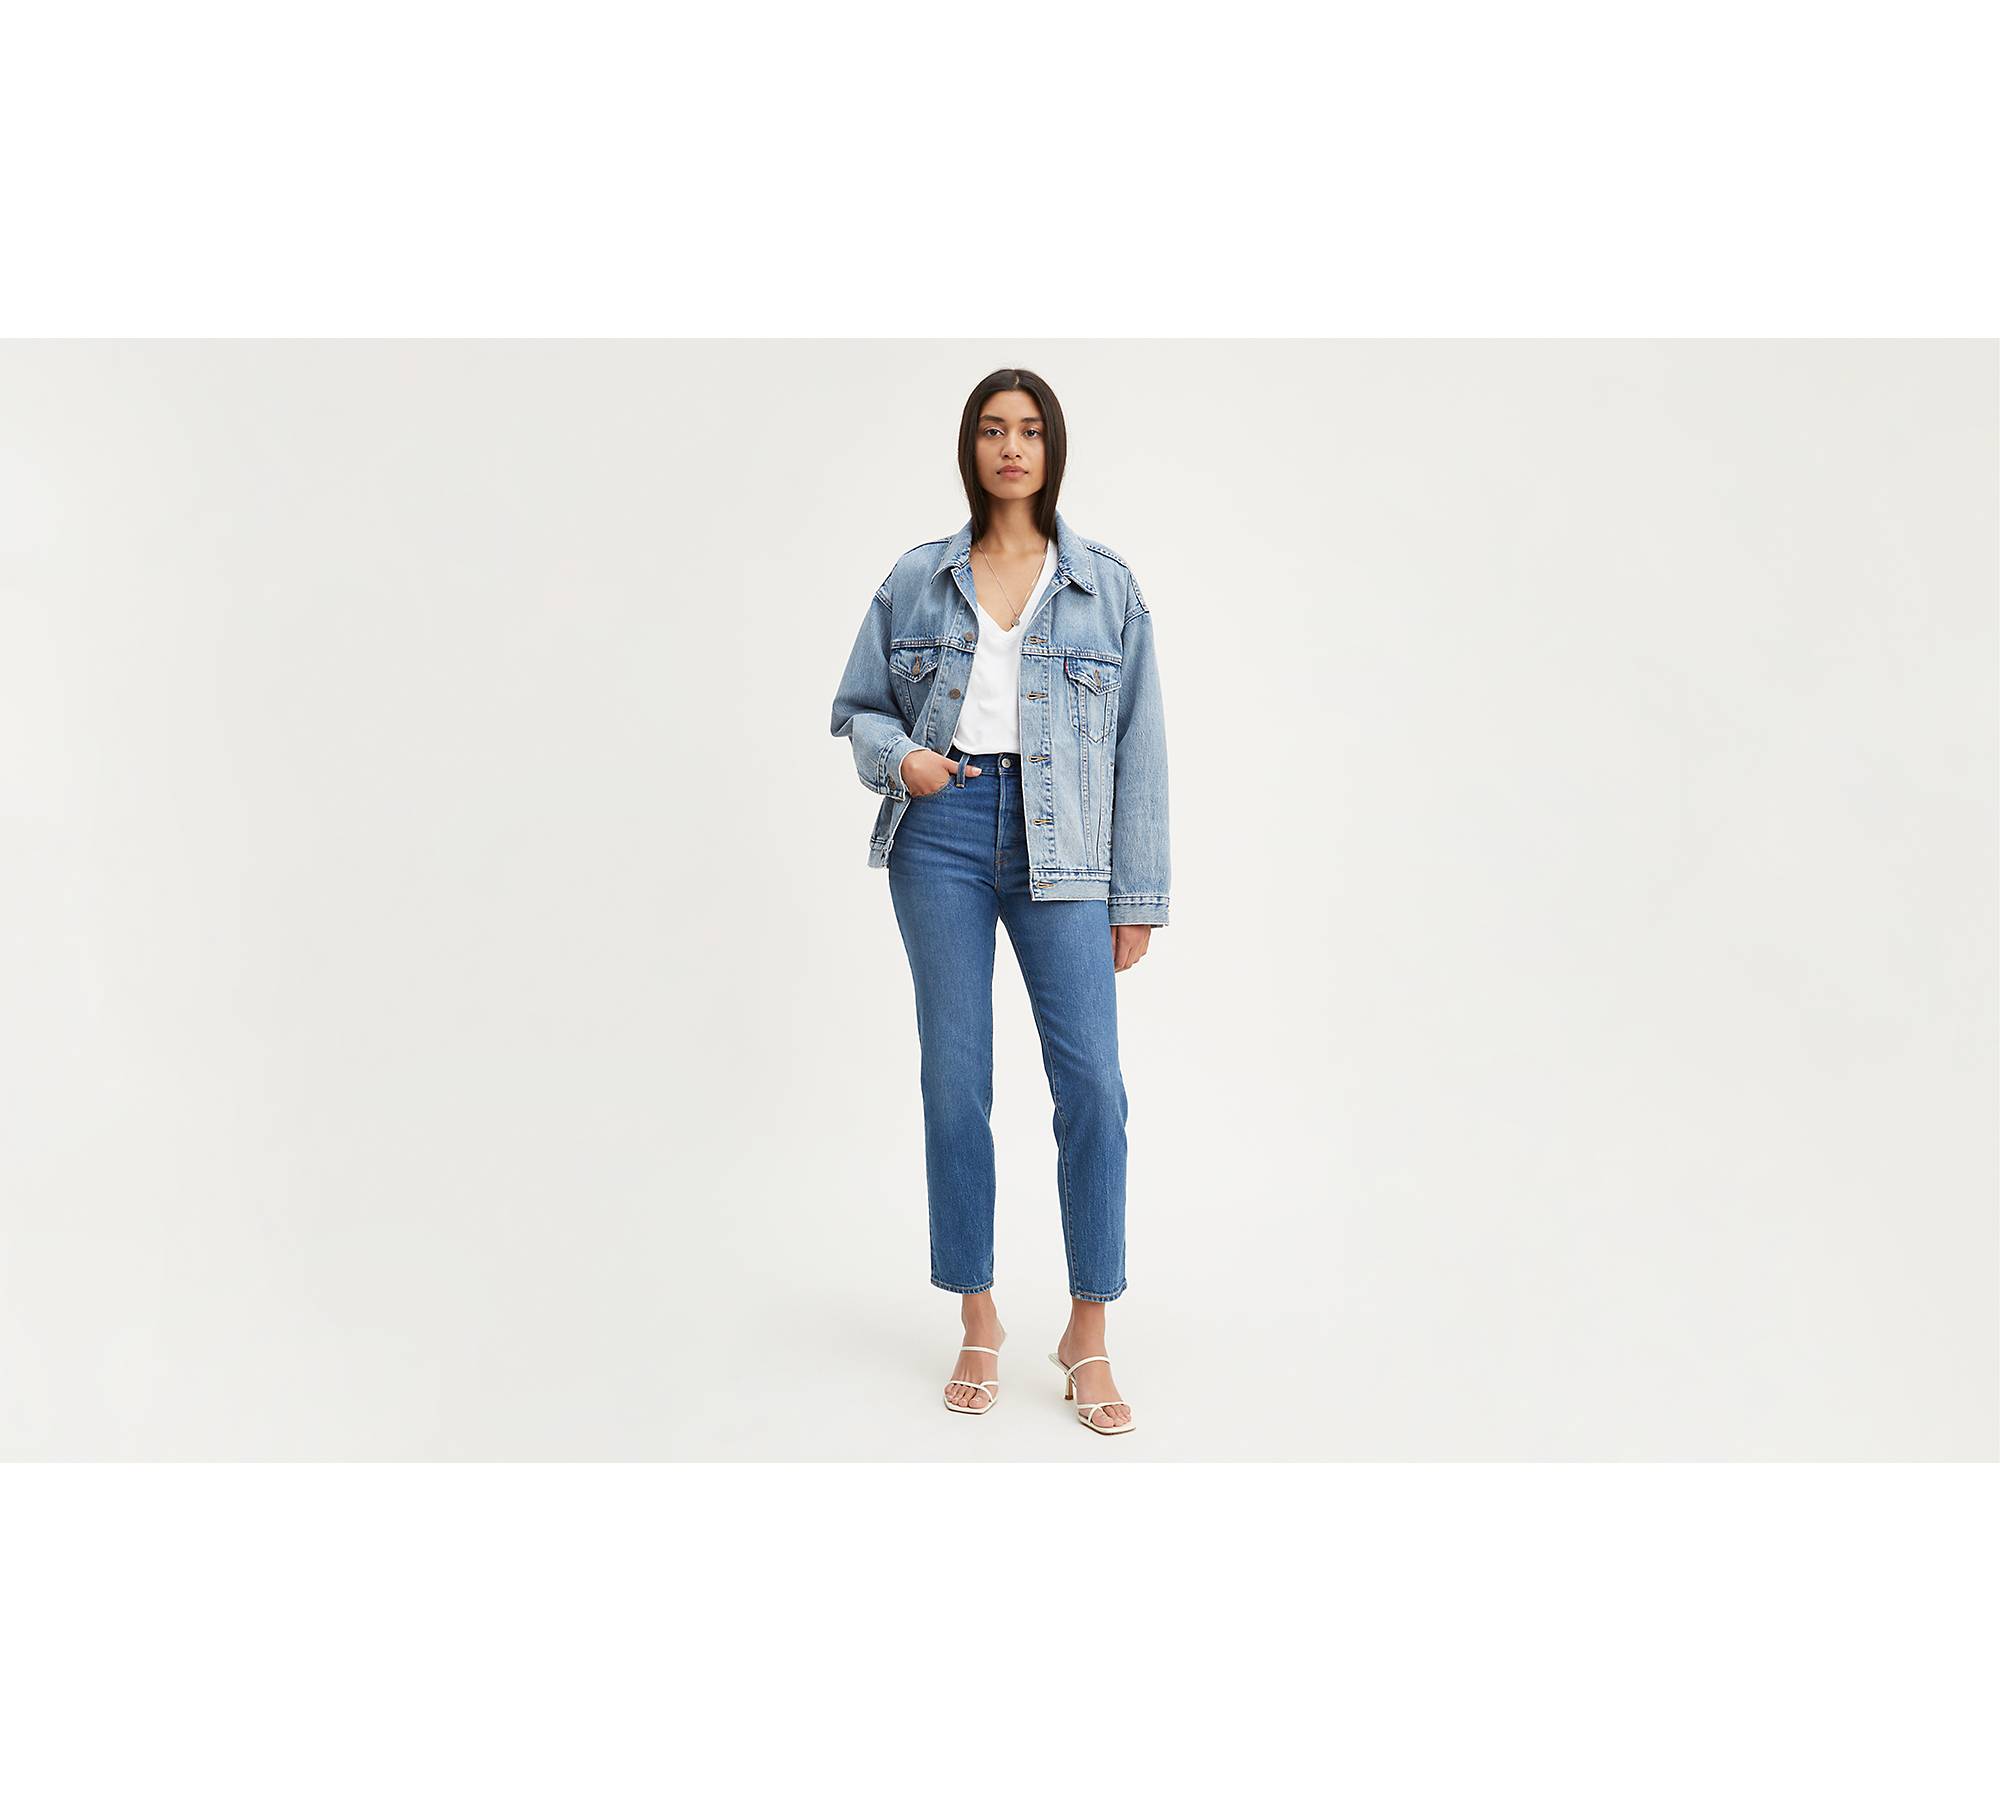 Levi's Wedgie Jeans - Shop on Pinterest